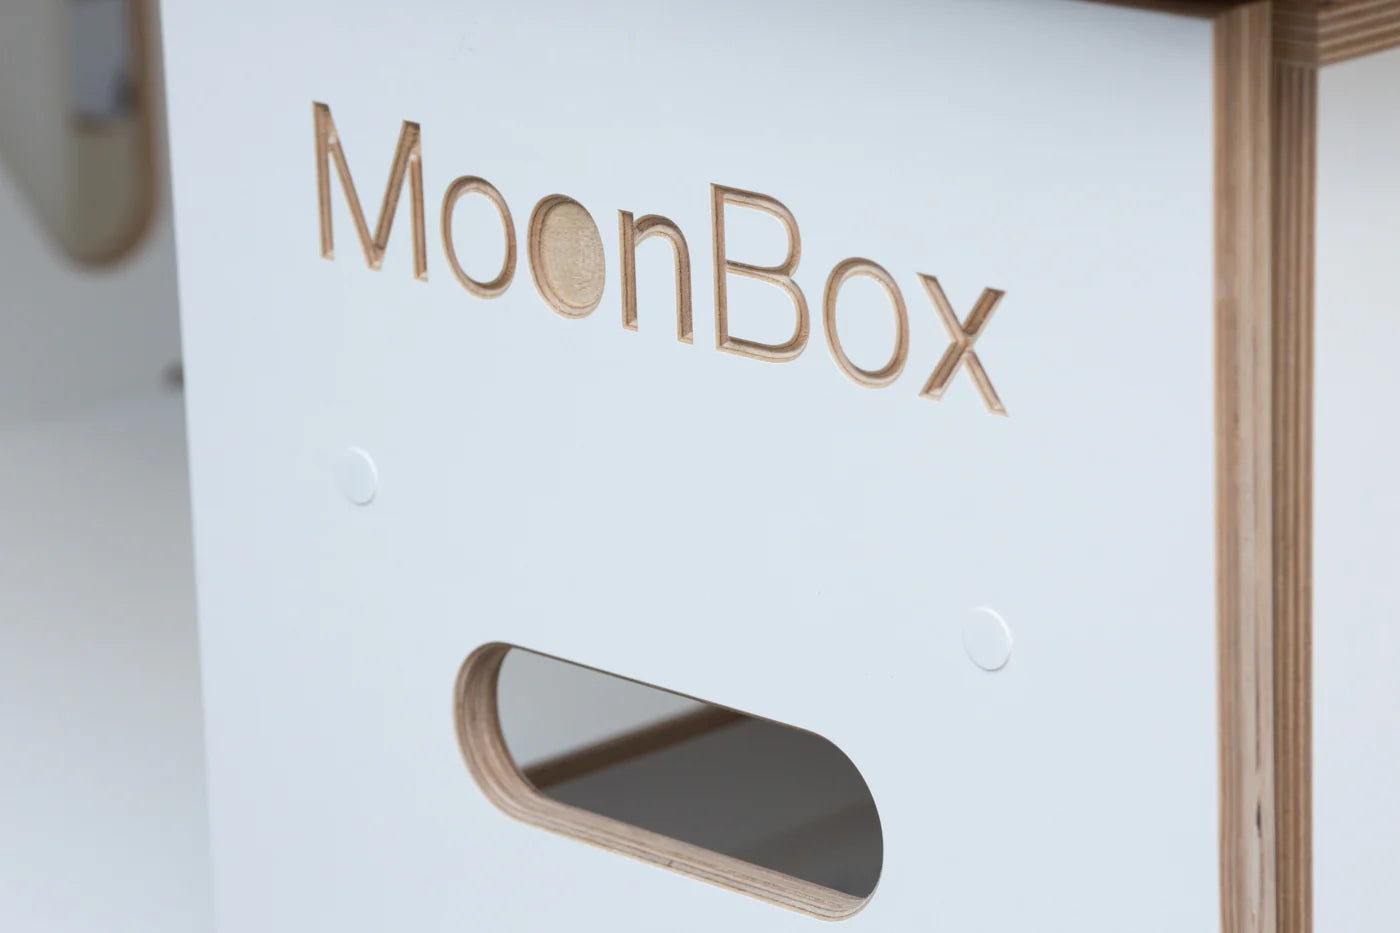 Moonbox Campingbox Minivan 111cm